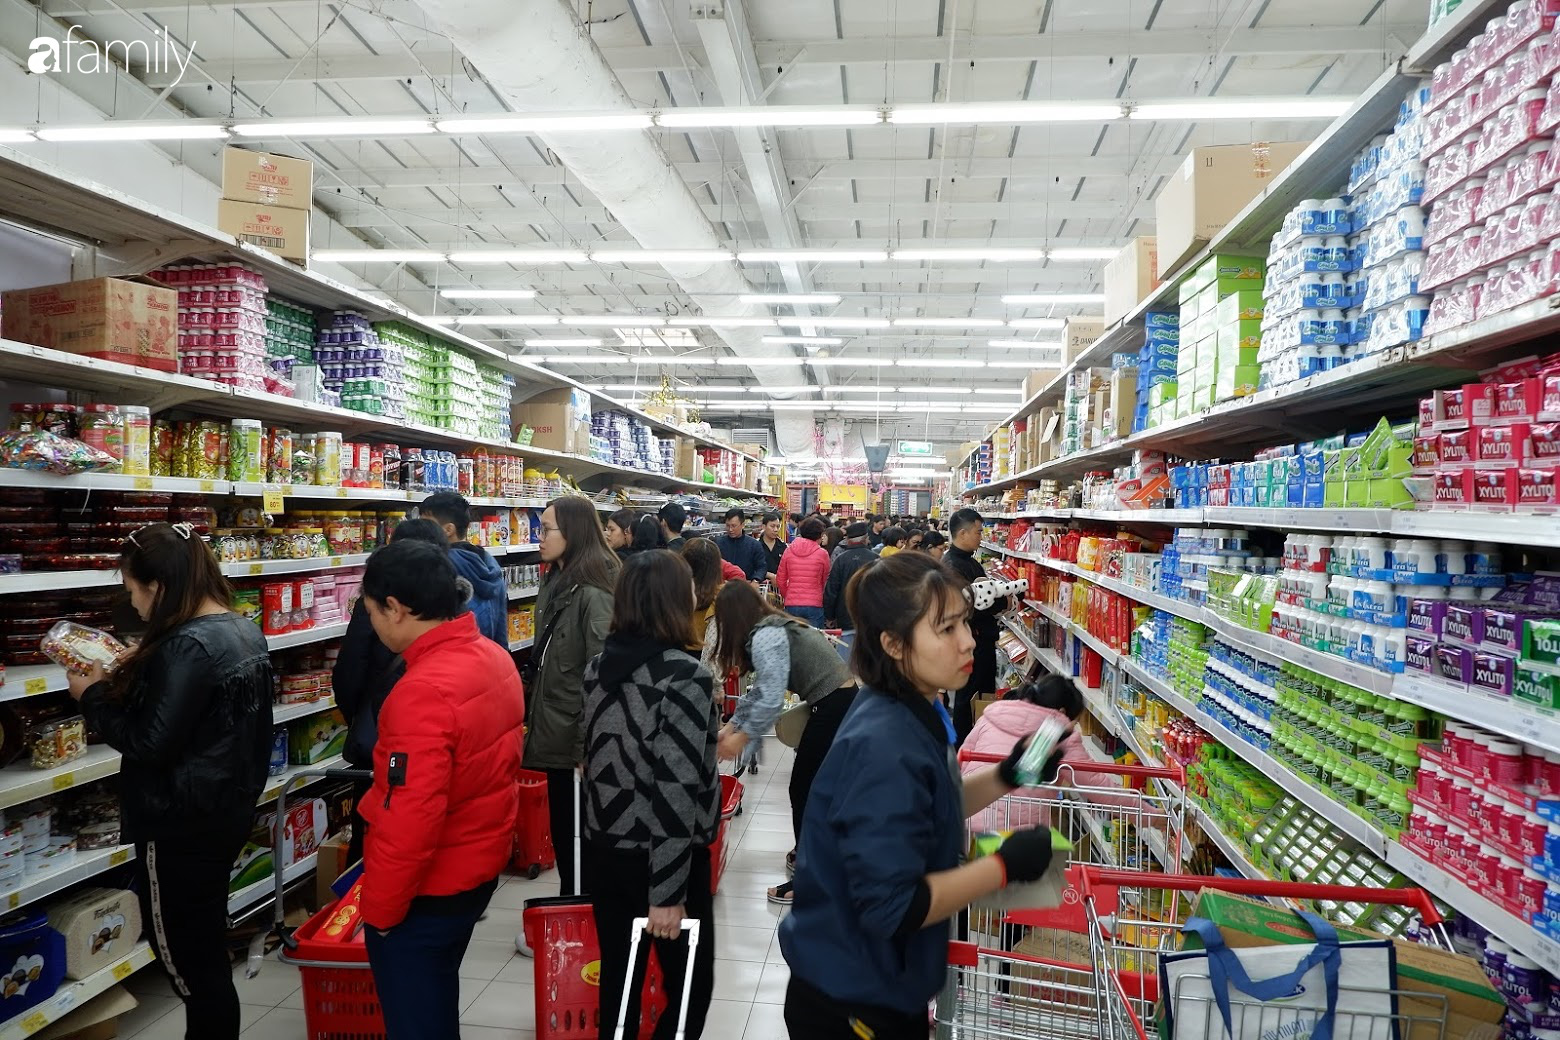 Mua sắm cực căng tại siêu thị lớn: Sản phẩm bay vèo vì giảm giá, người dân ùn ùn đứng xếp hàng thanh toán cả tiếng đồng hồ - Ảnh 10.